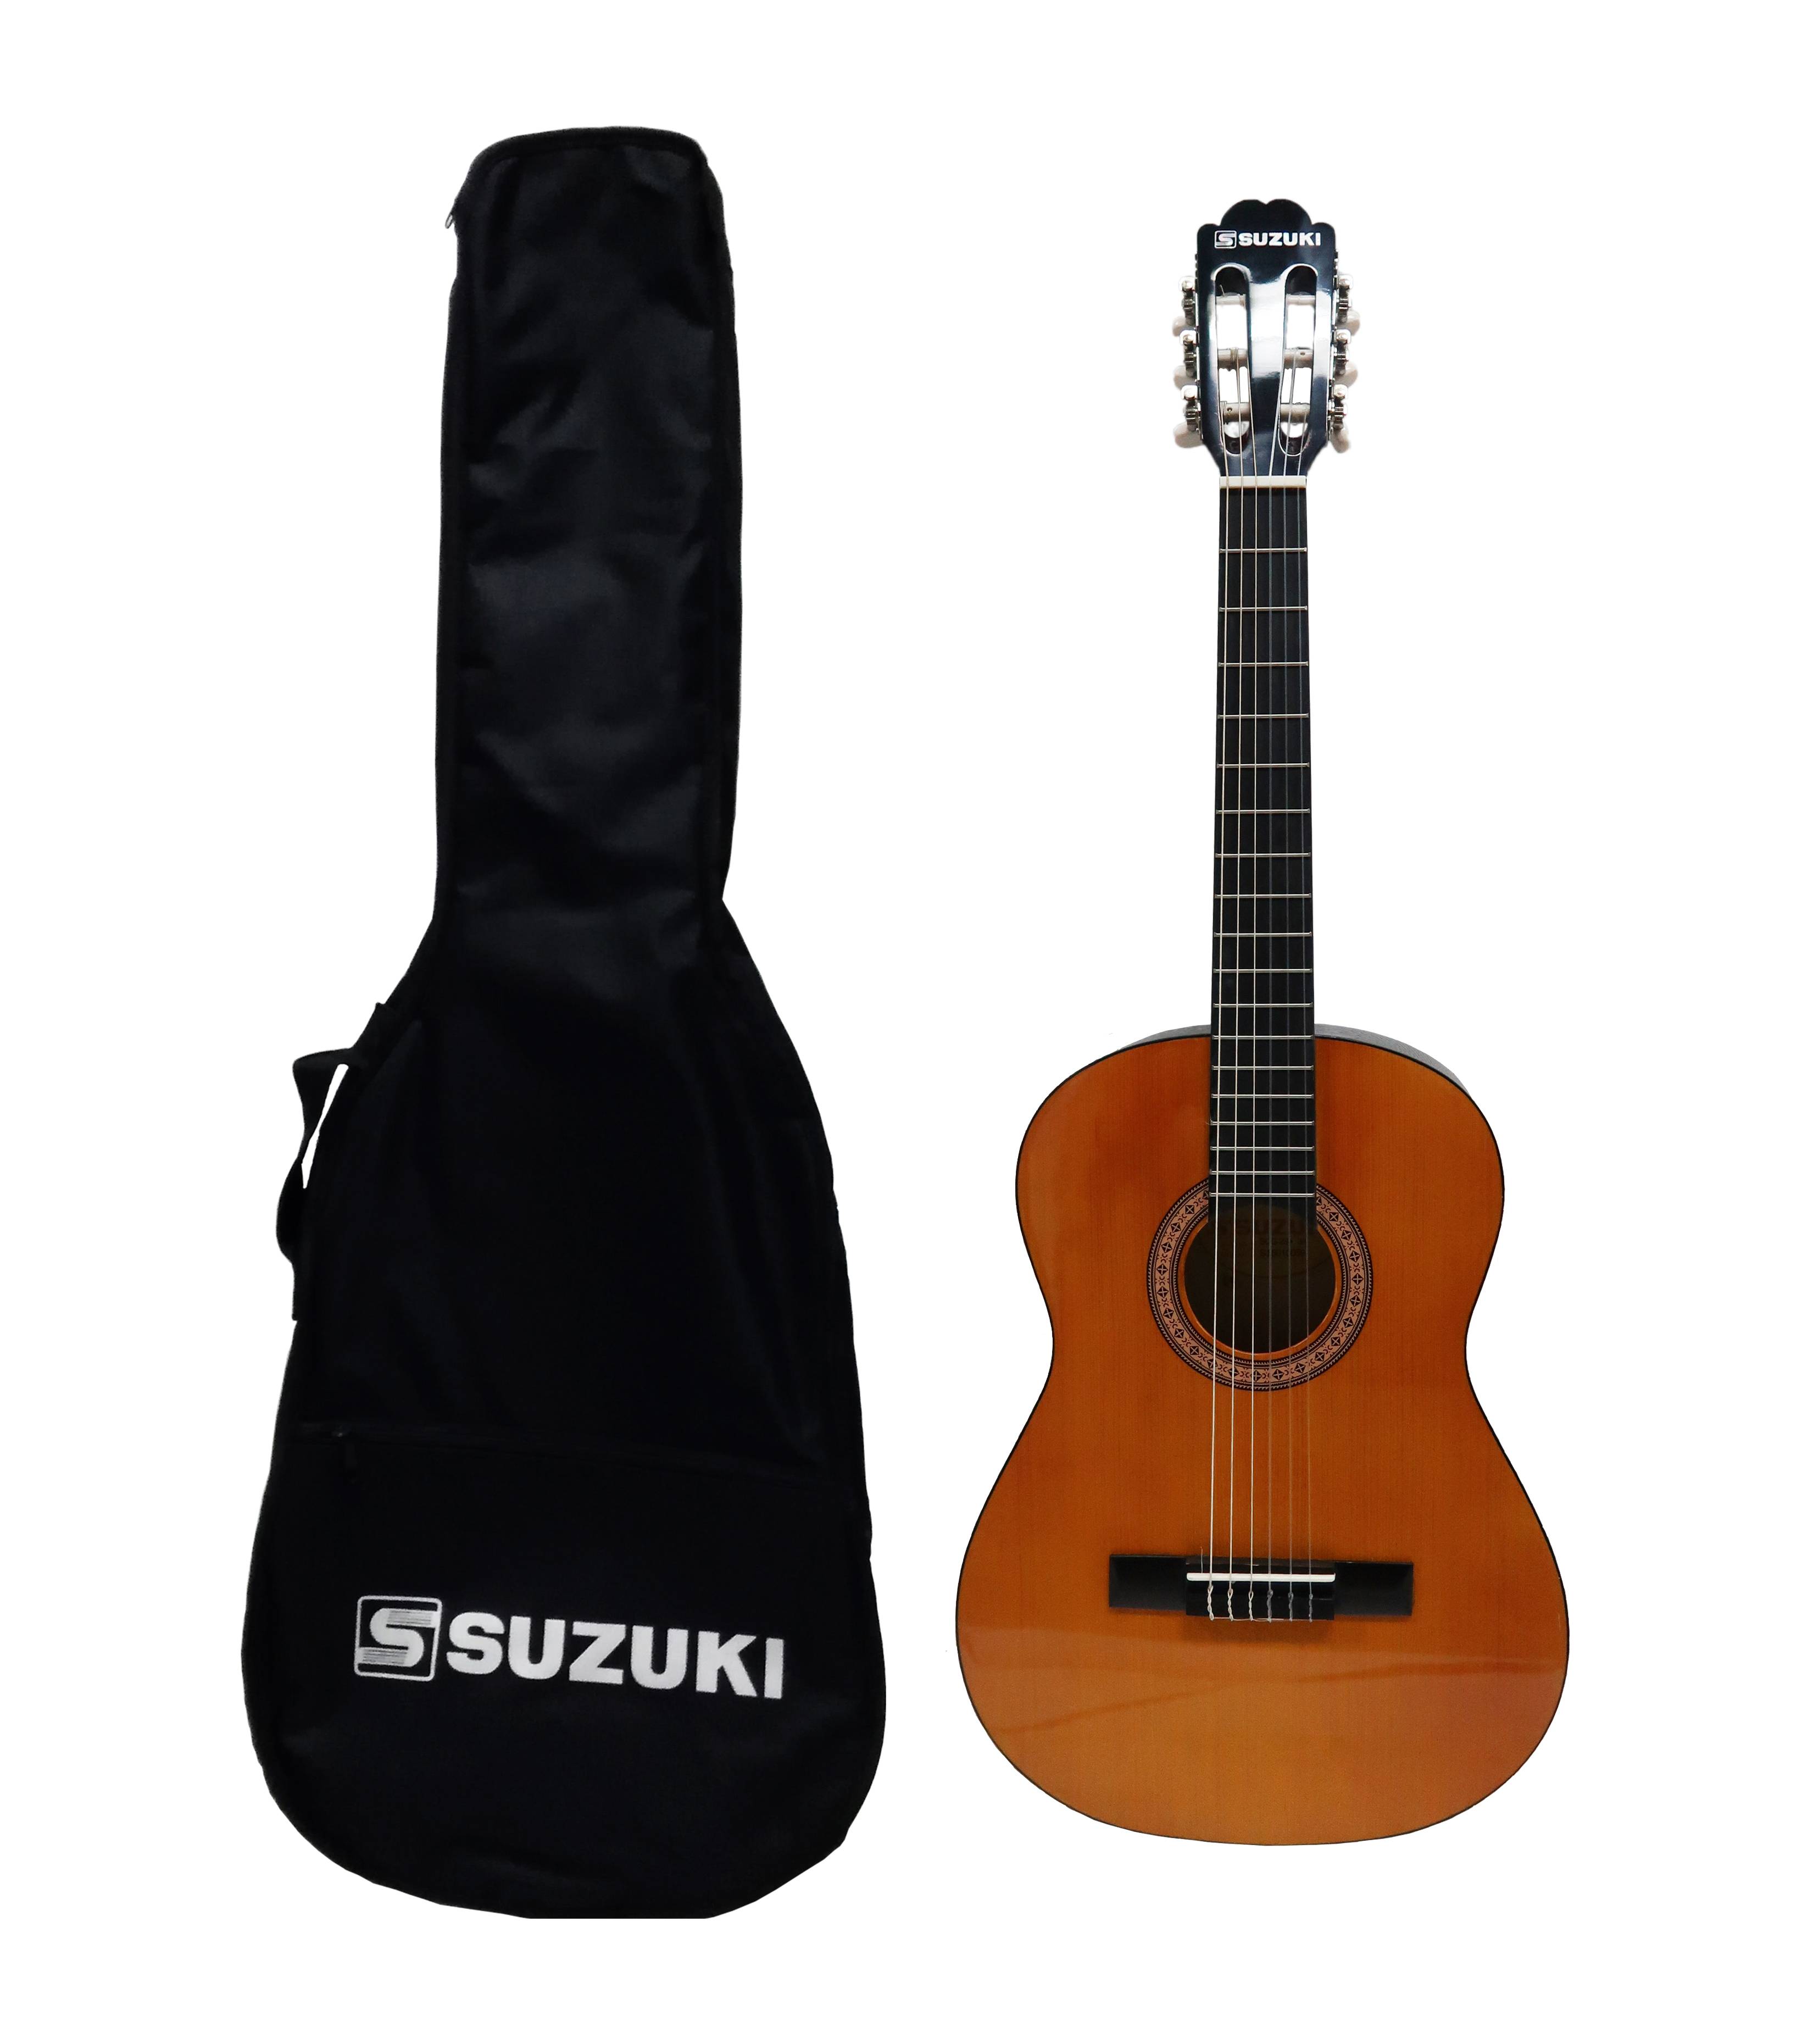 Детальная картинка товара Suzuki SCG-2S+3/4 NL в магазине Музыкальный Мир